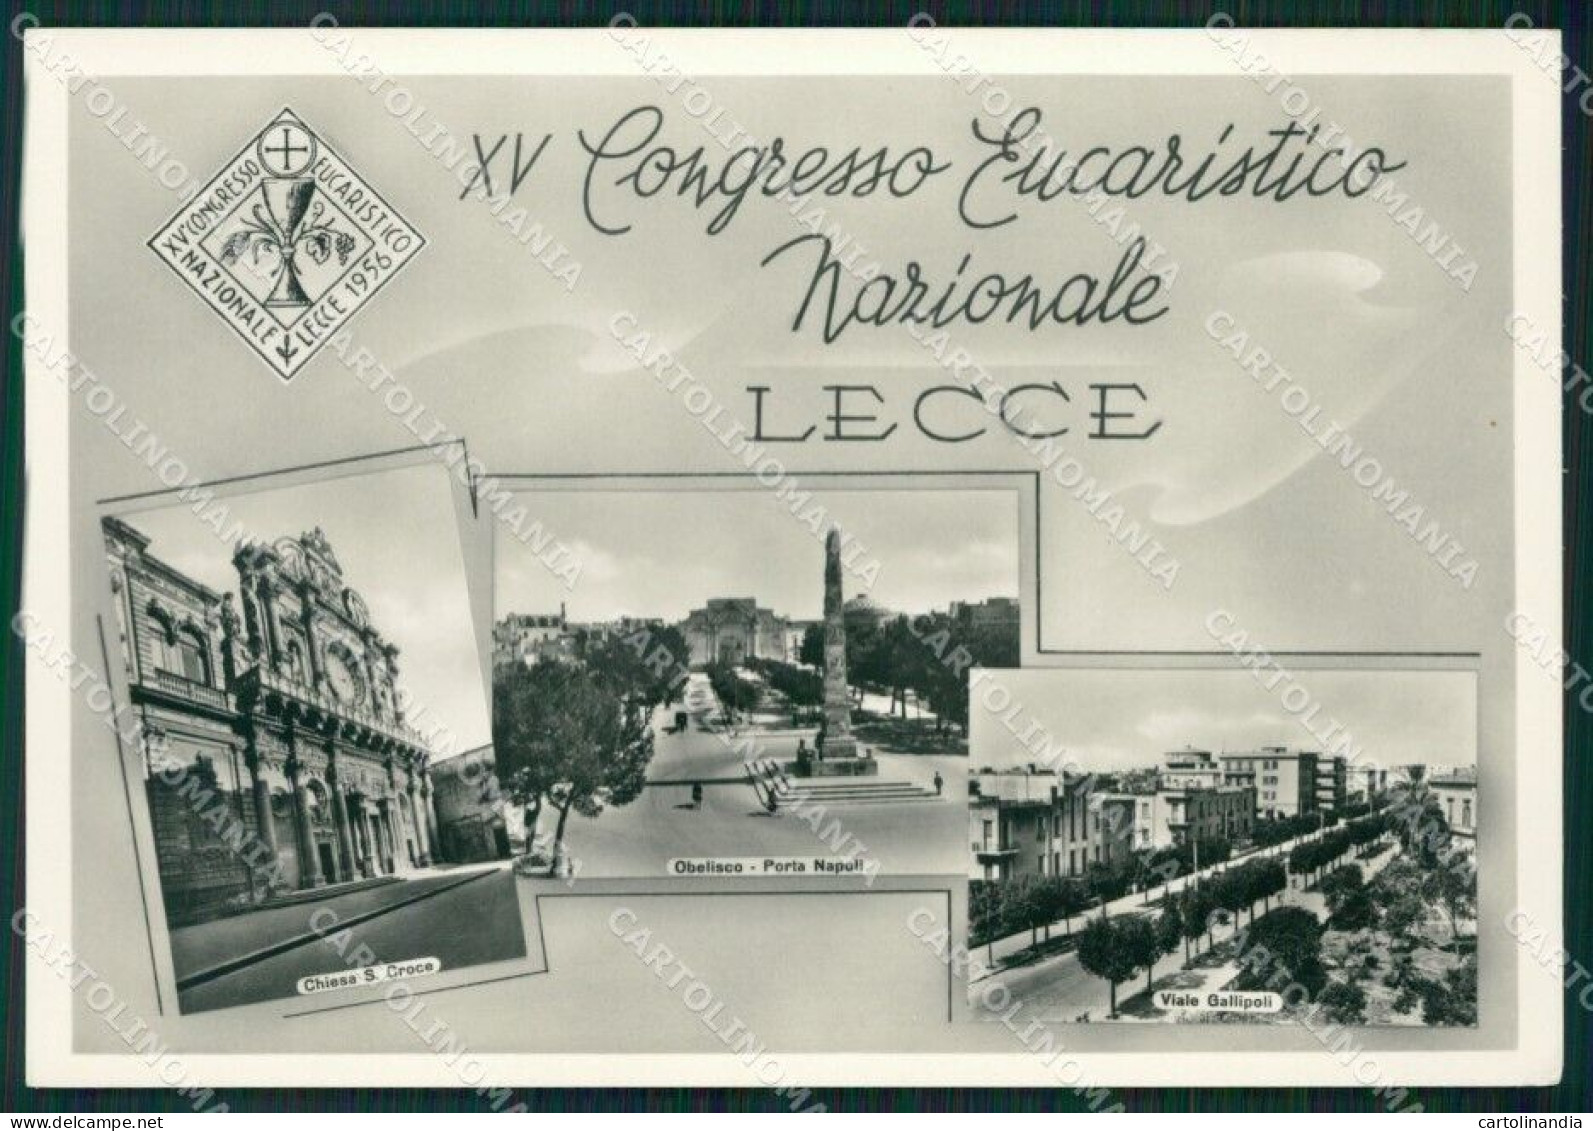 Lecce Città Congresso Eucaristico Foto FG Cartolina ZK1083 - Lecce